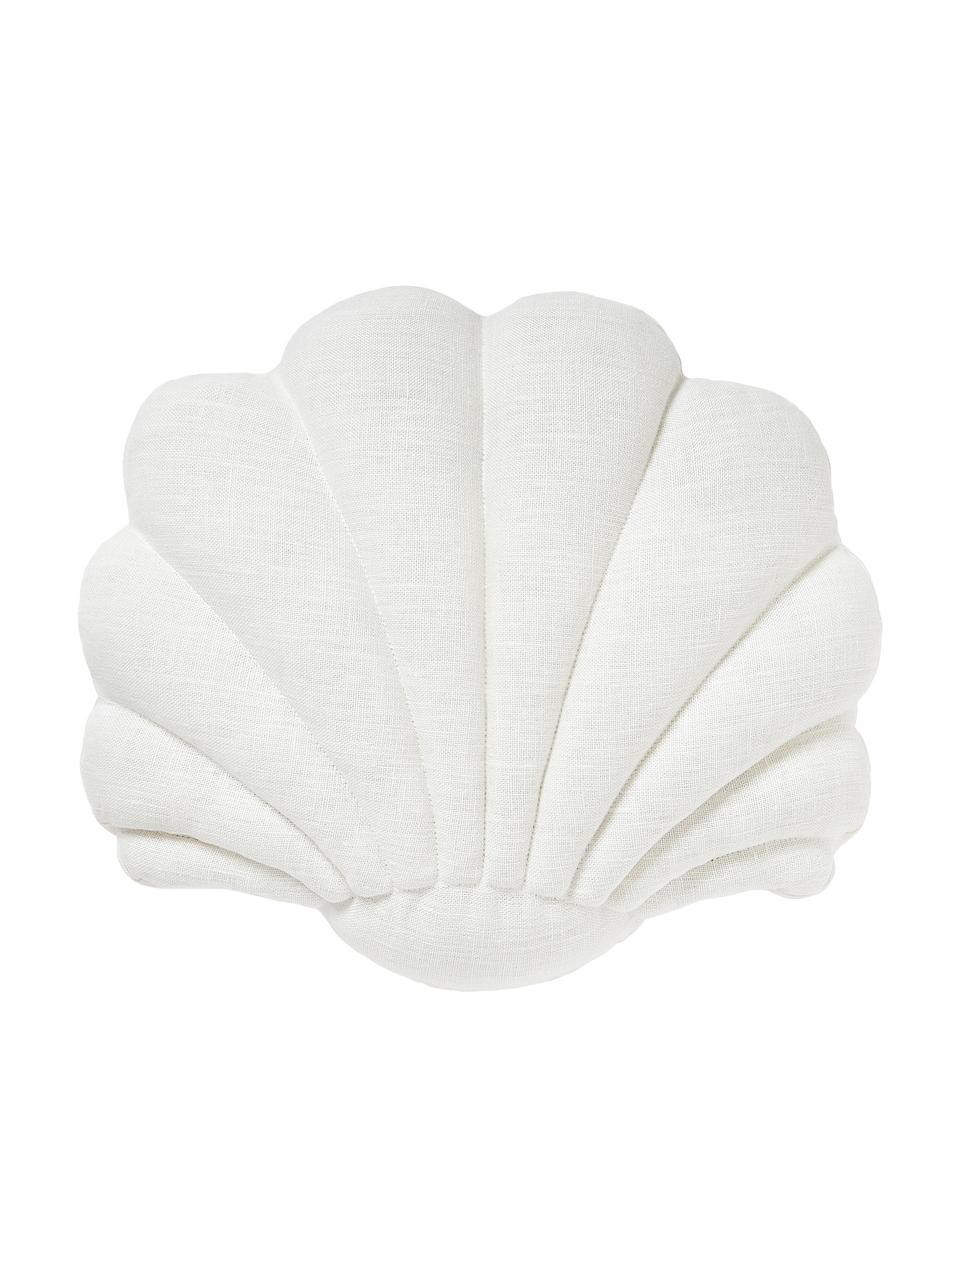 Leinen-Kissen Shell in Muschelform, Vorderseite: 100 % Leinen, Rückseite: 100 % Baumwolle, Cremeweiß, B 34 x L 38 cm